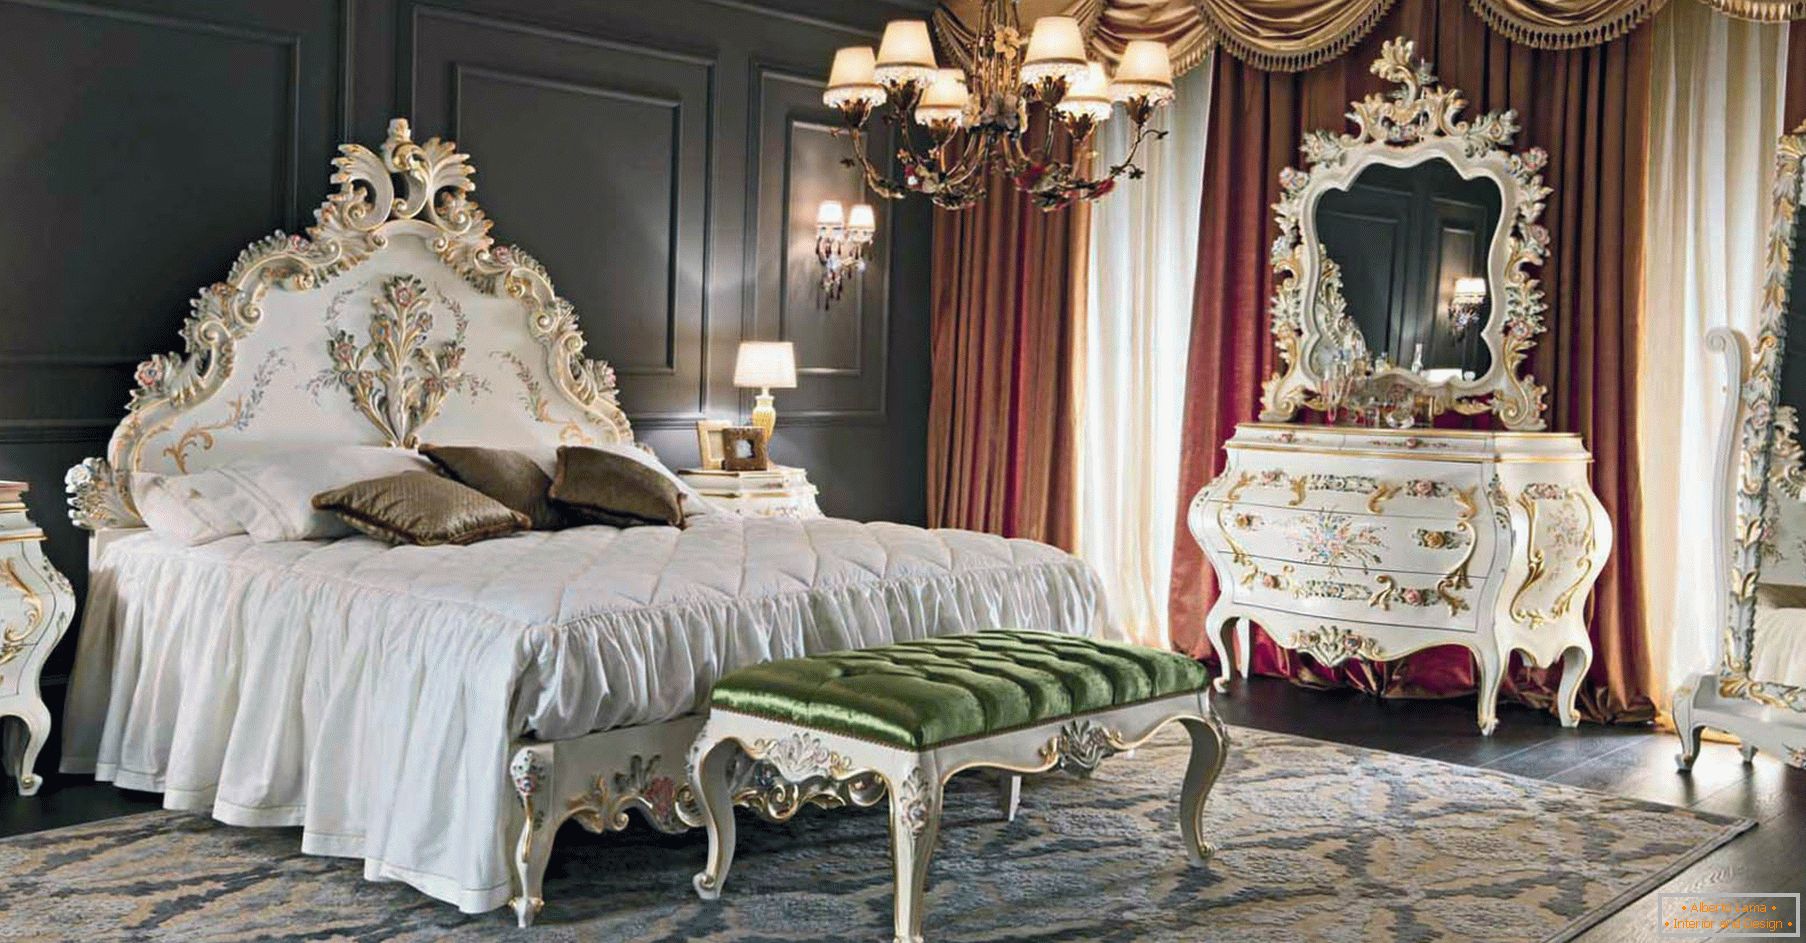 Aby ozdobić sypialnię, zastosowano kontrast ciemnego brązu, złota, czerwieni i bieli. Meble dobierane są według stylu baroku.